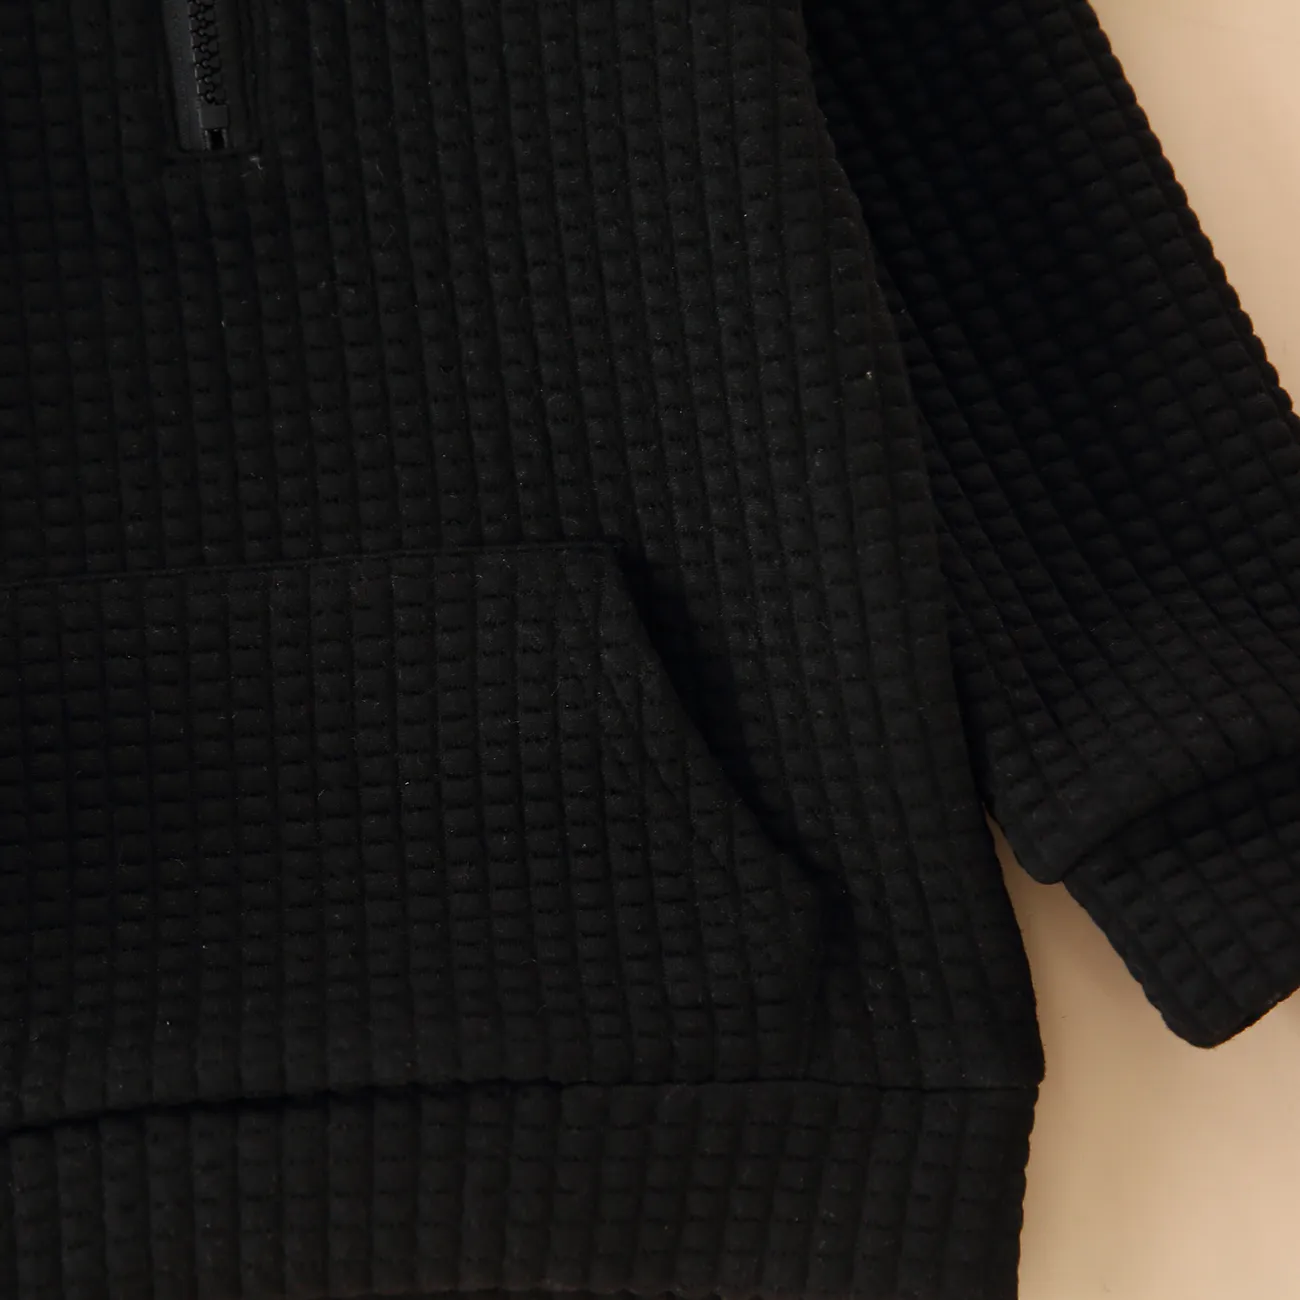 Kleinkinder Unisex Polokragen Lässig Sweatshirts schwarz big image 1